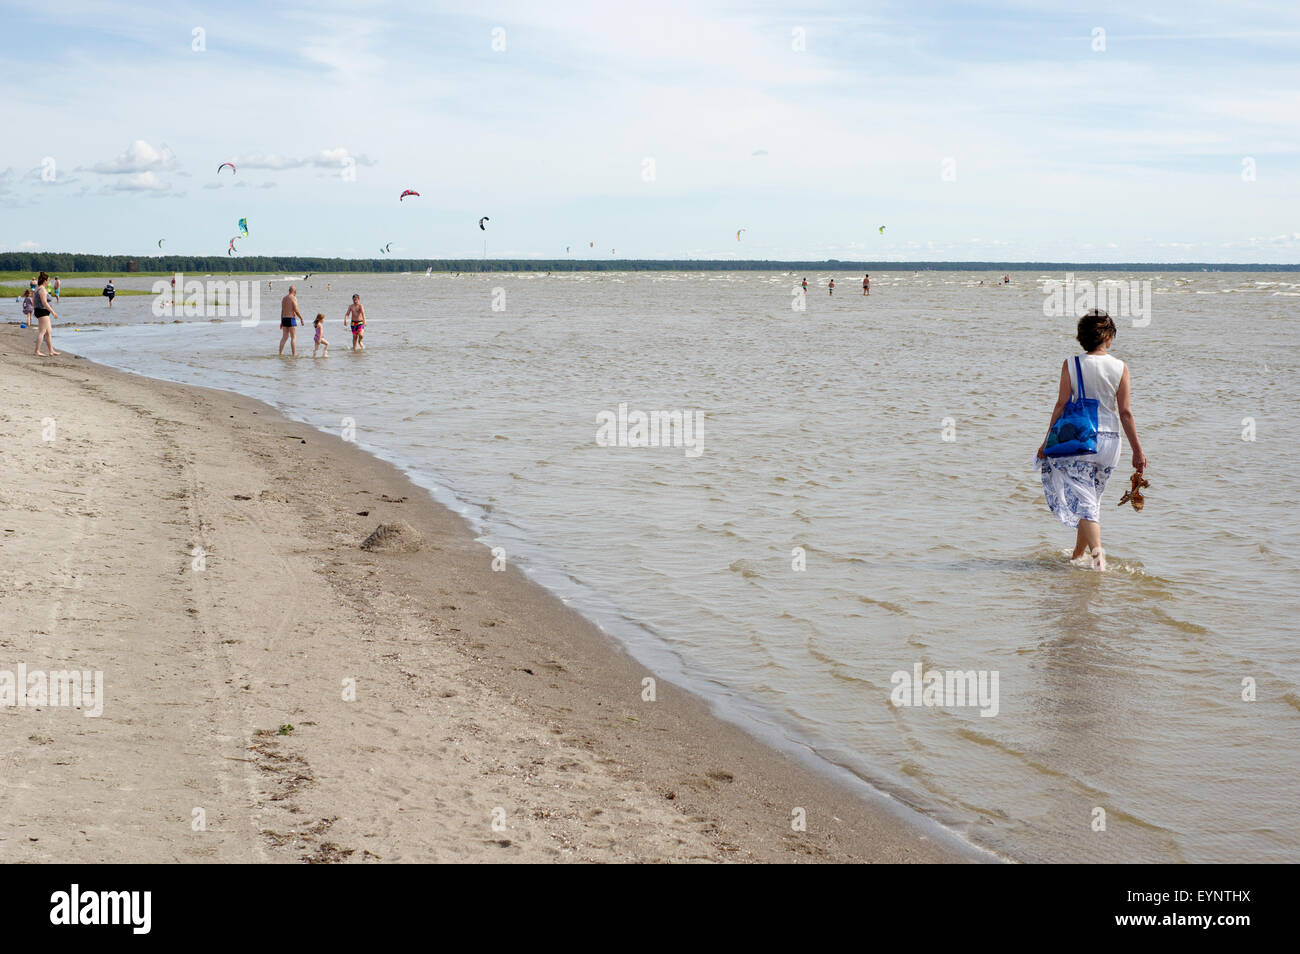 La plage de Pärnu, Estonie Etats baltes Europe UE 21 Juillet, 2015 Banque D'Images